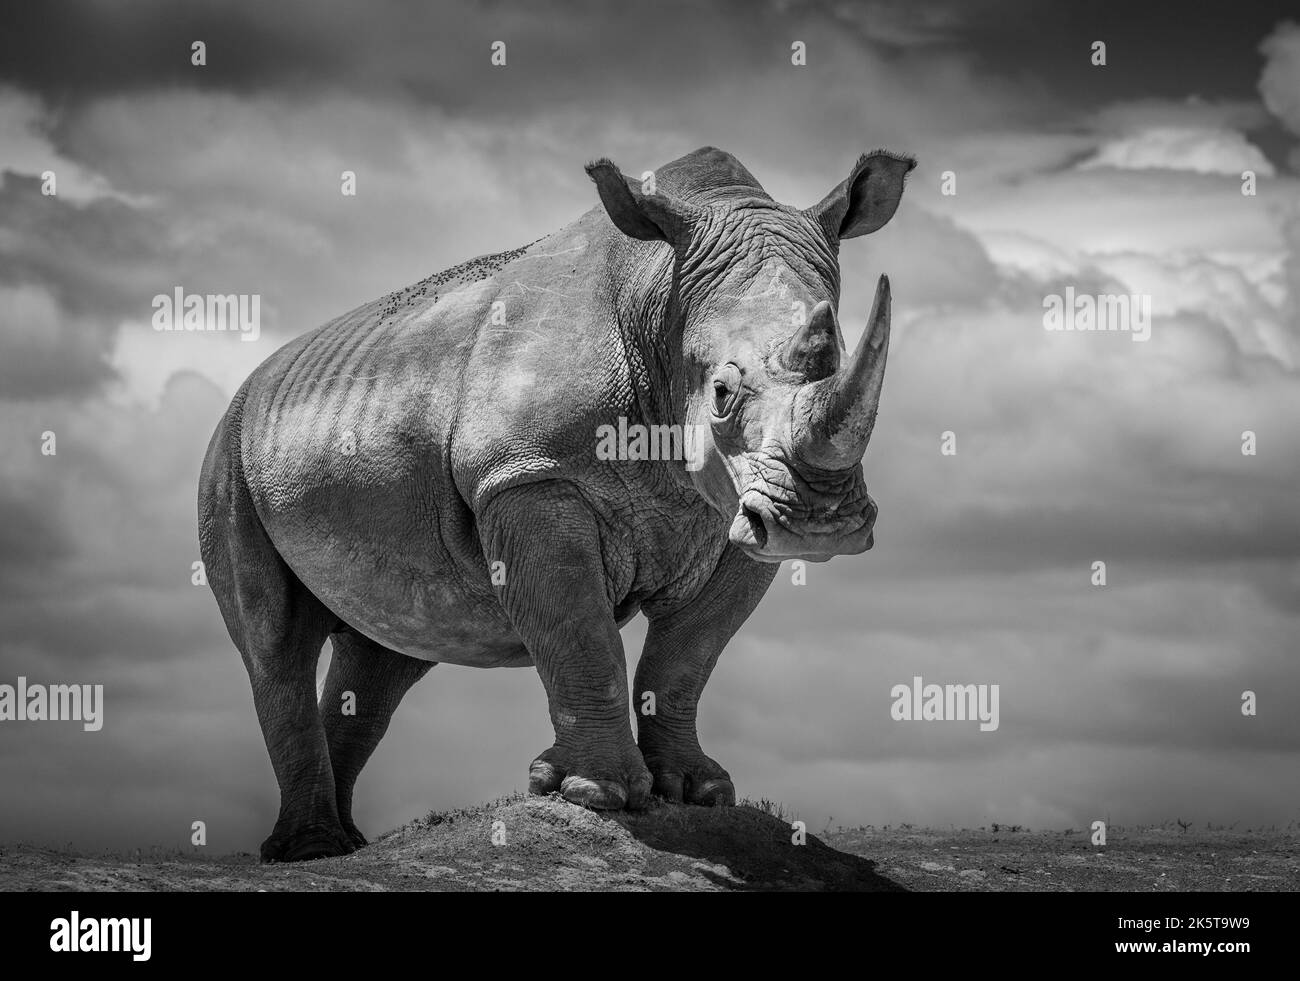 Un rinoceronte posa para la cámara. África: ESTAS INCREÍBLES imágenes de un fotógrafo británico captan todo el drama de la fauna africana desde el cebr Foto de stock